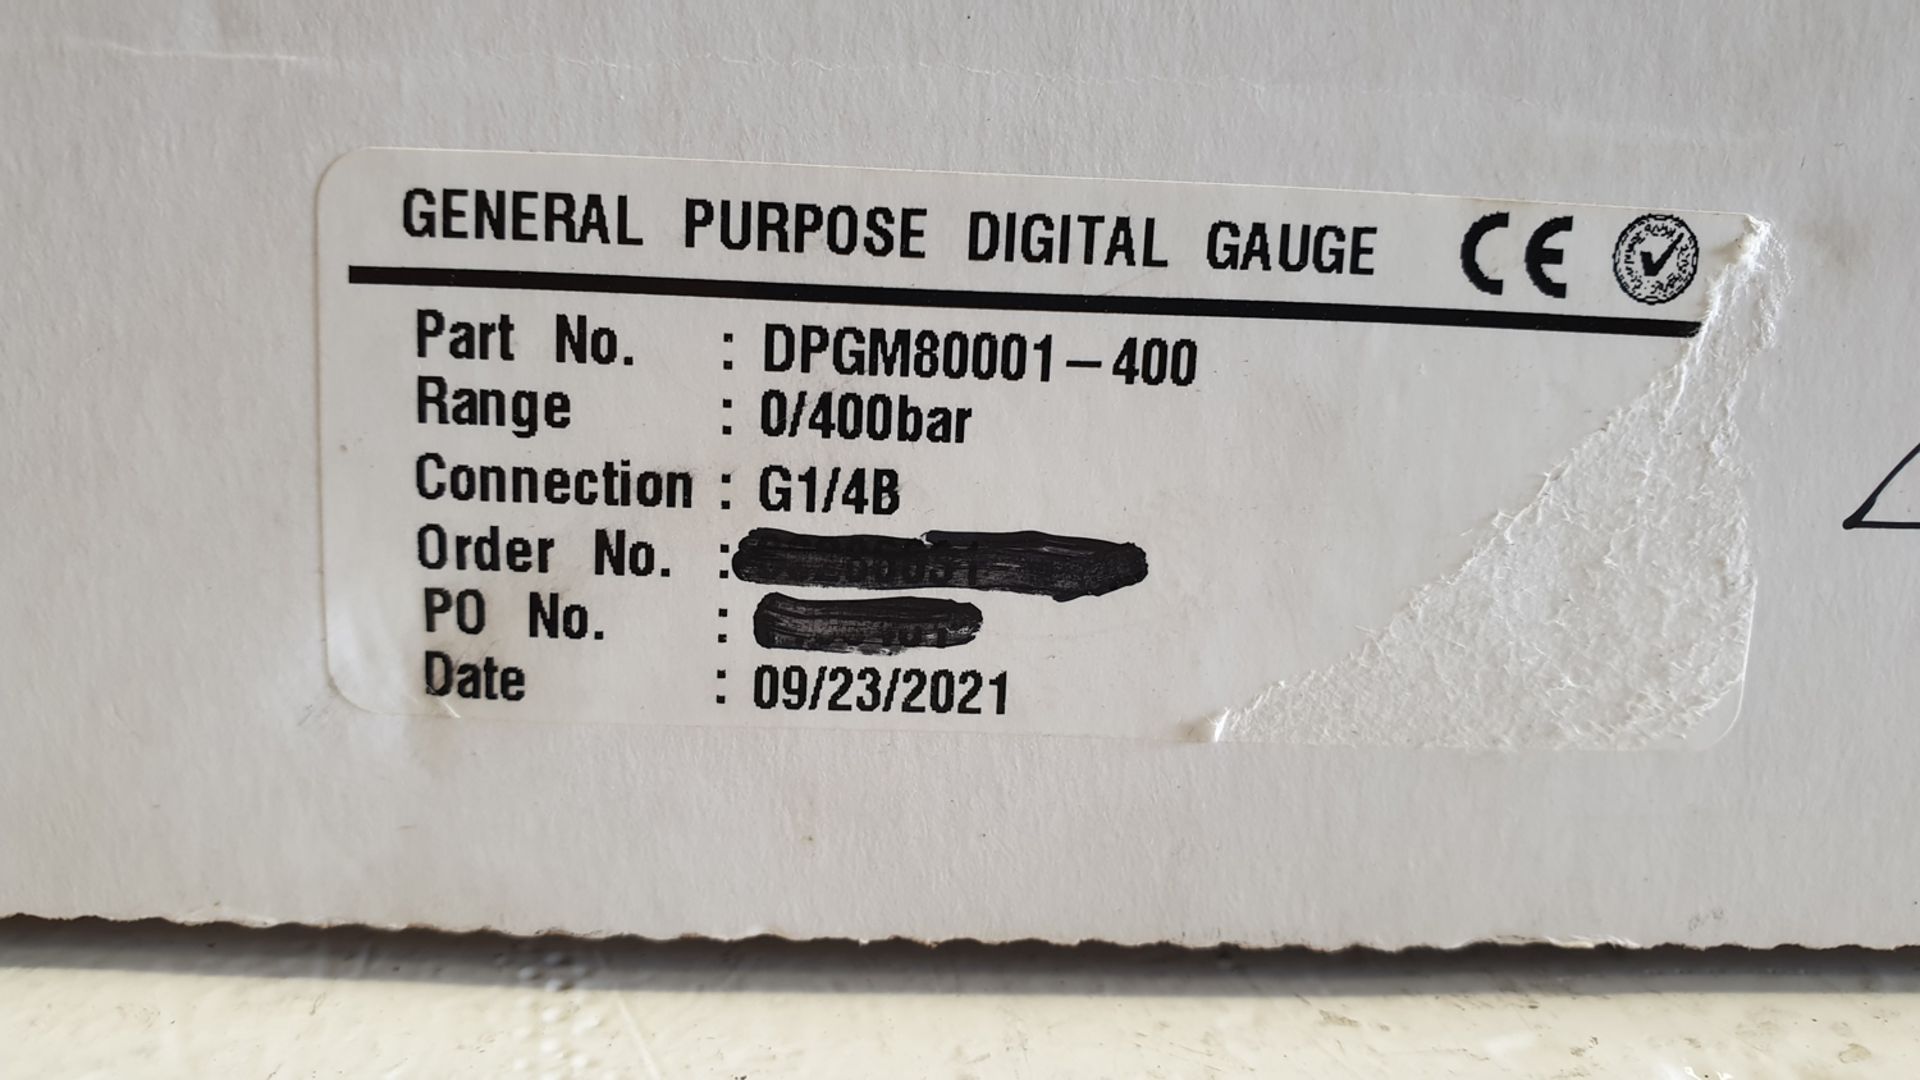 Omega 400 Bar General Purpose Digital Gauge. Range 0-400 bar. Connection G1/4B. New September 2021. - Image 2 of 2